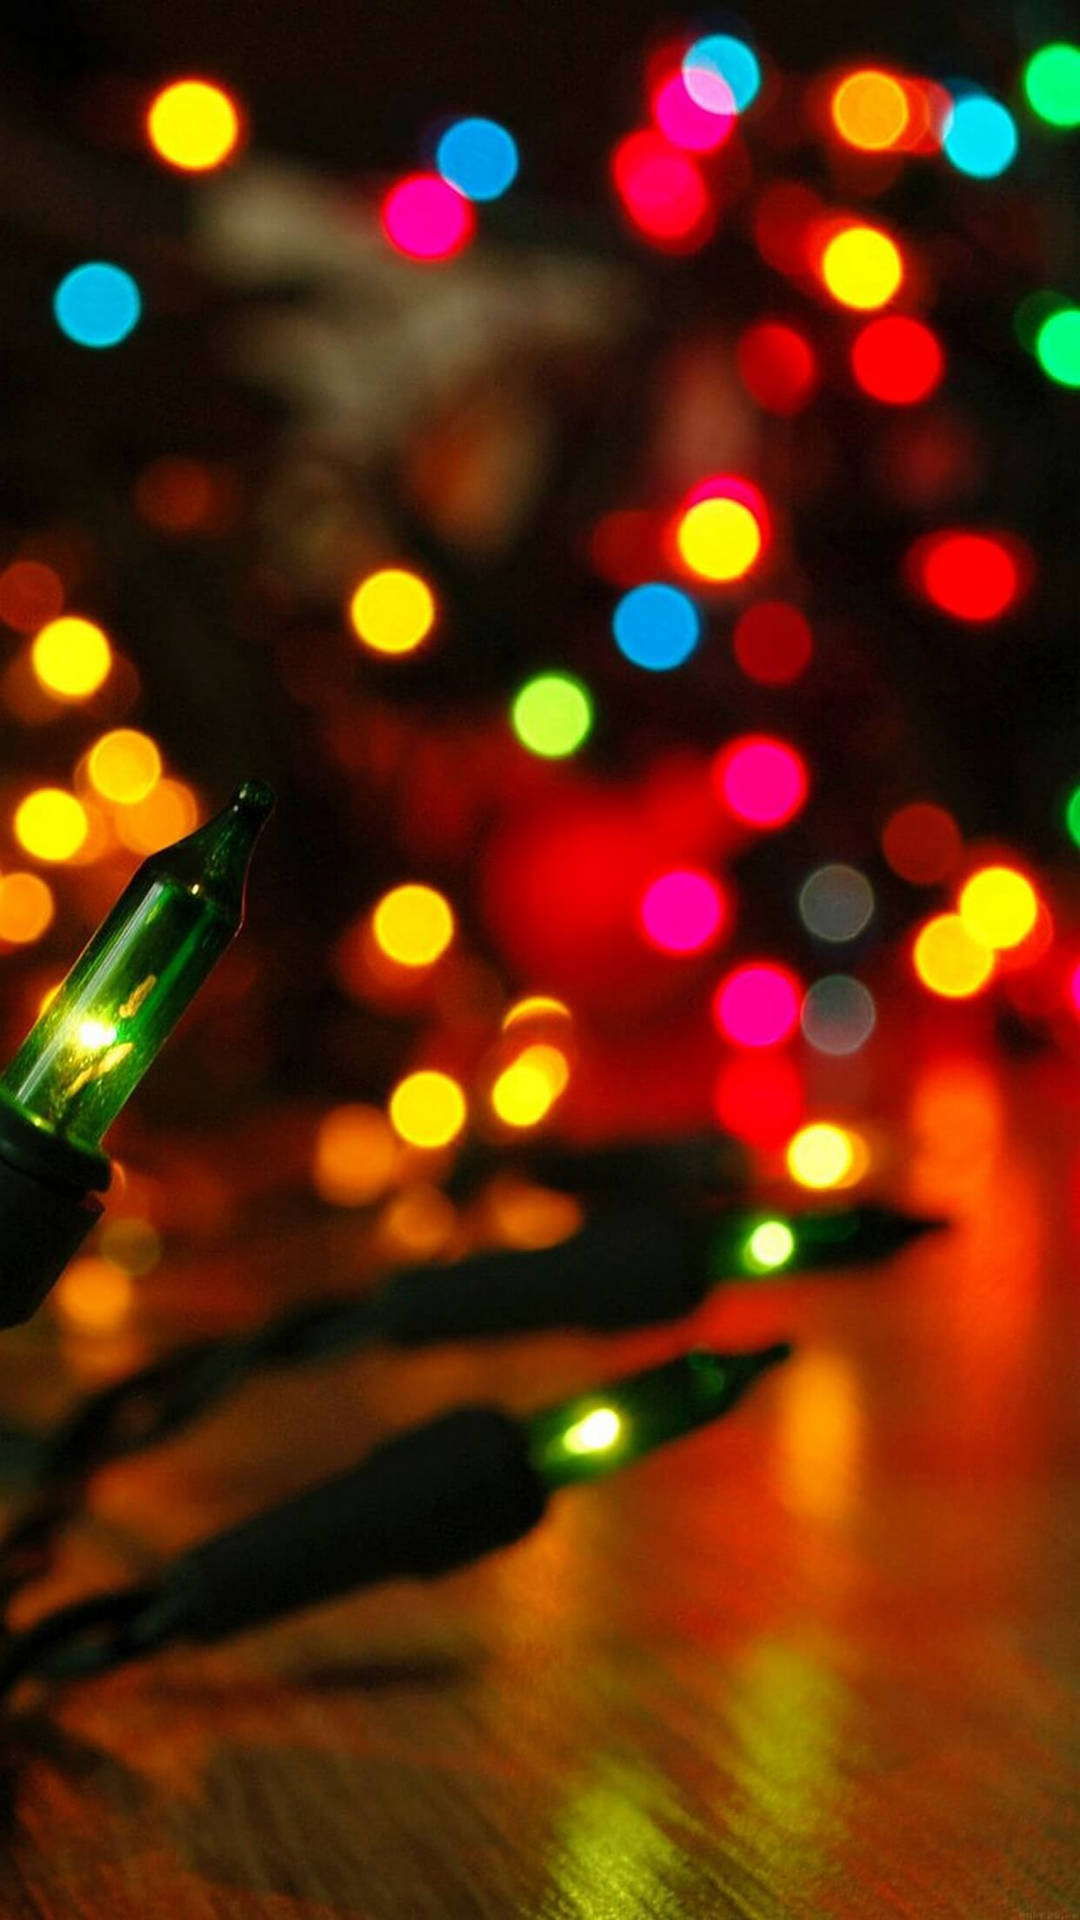 Nyd den magiske julelys på din Iphone! Wallpaper